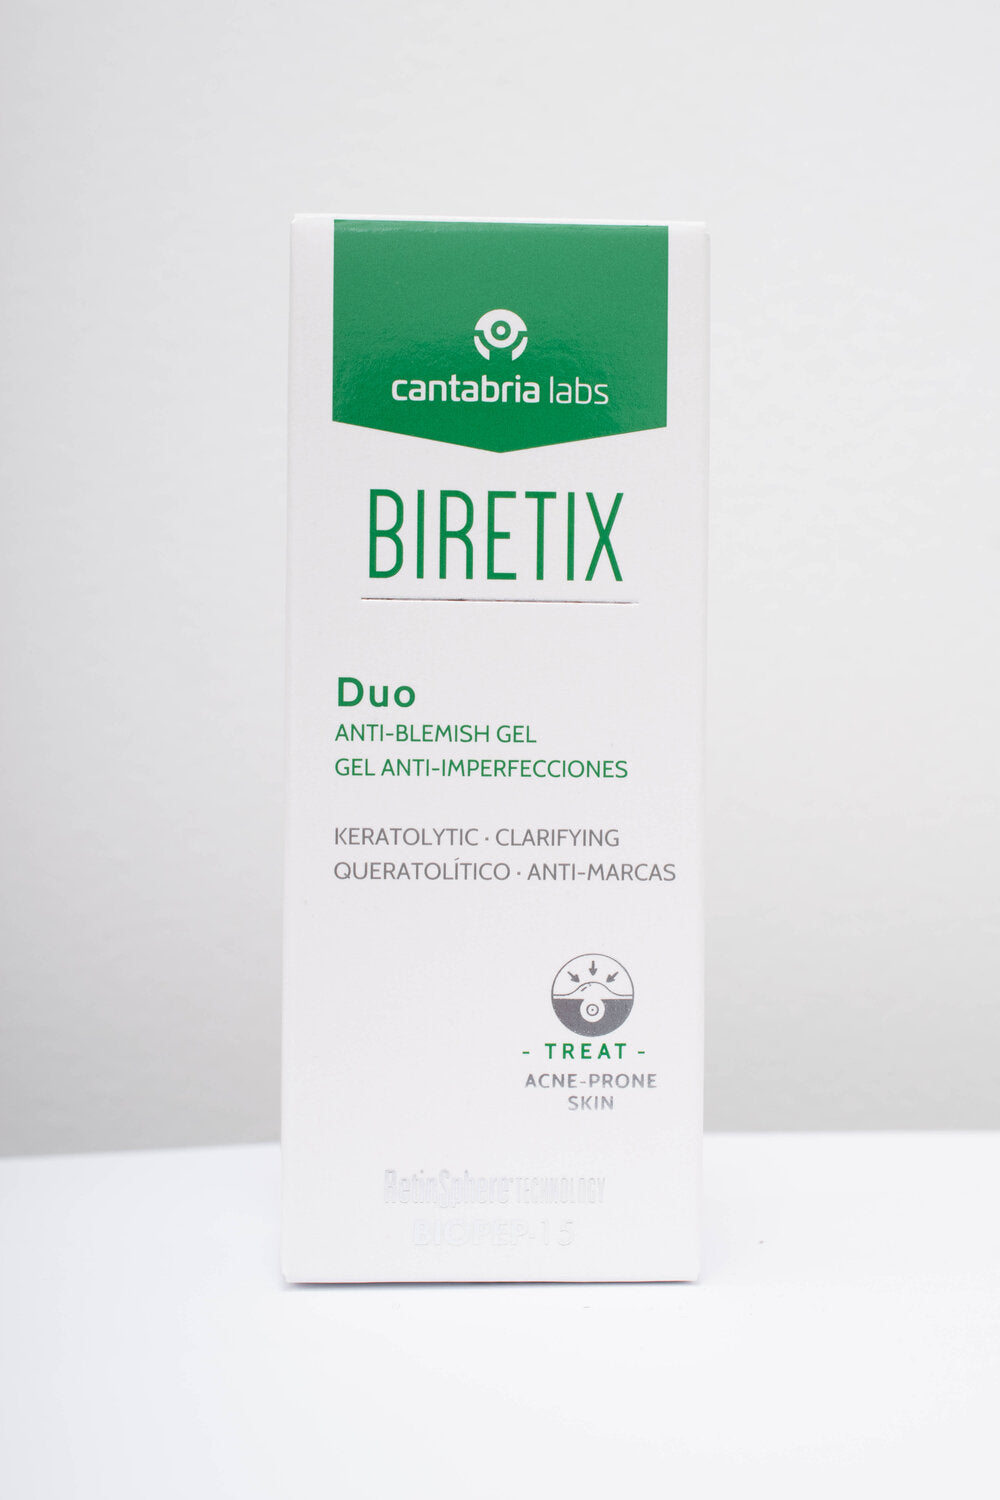 Biretix: Duo